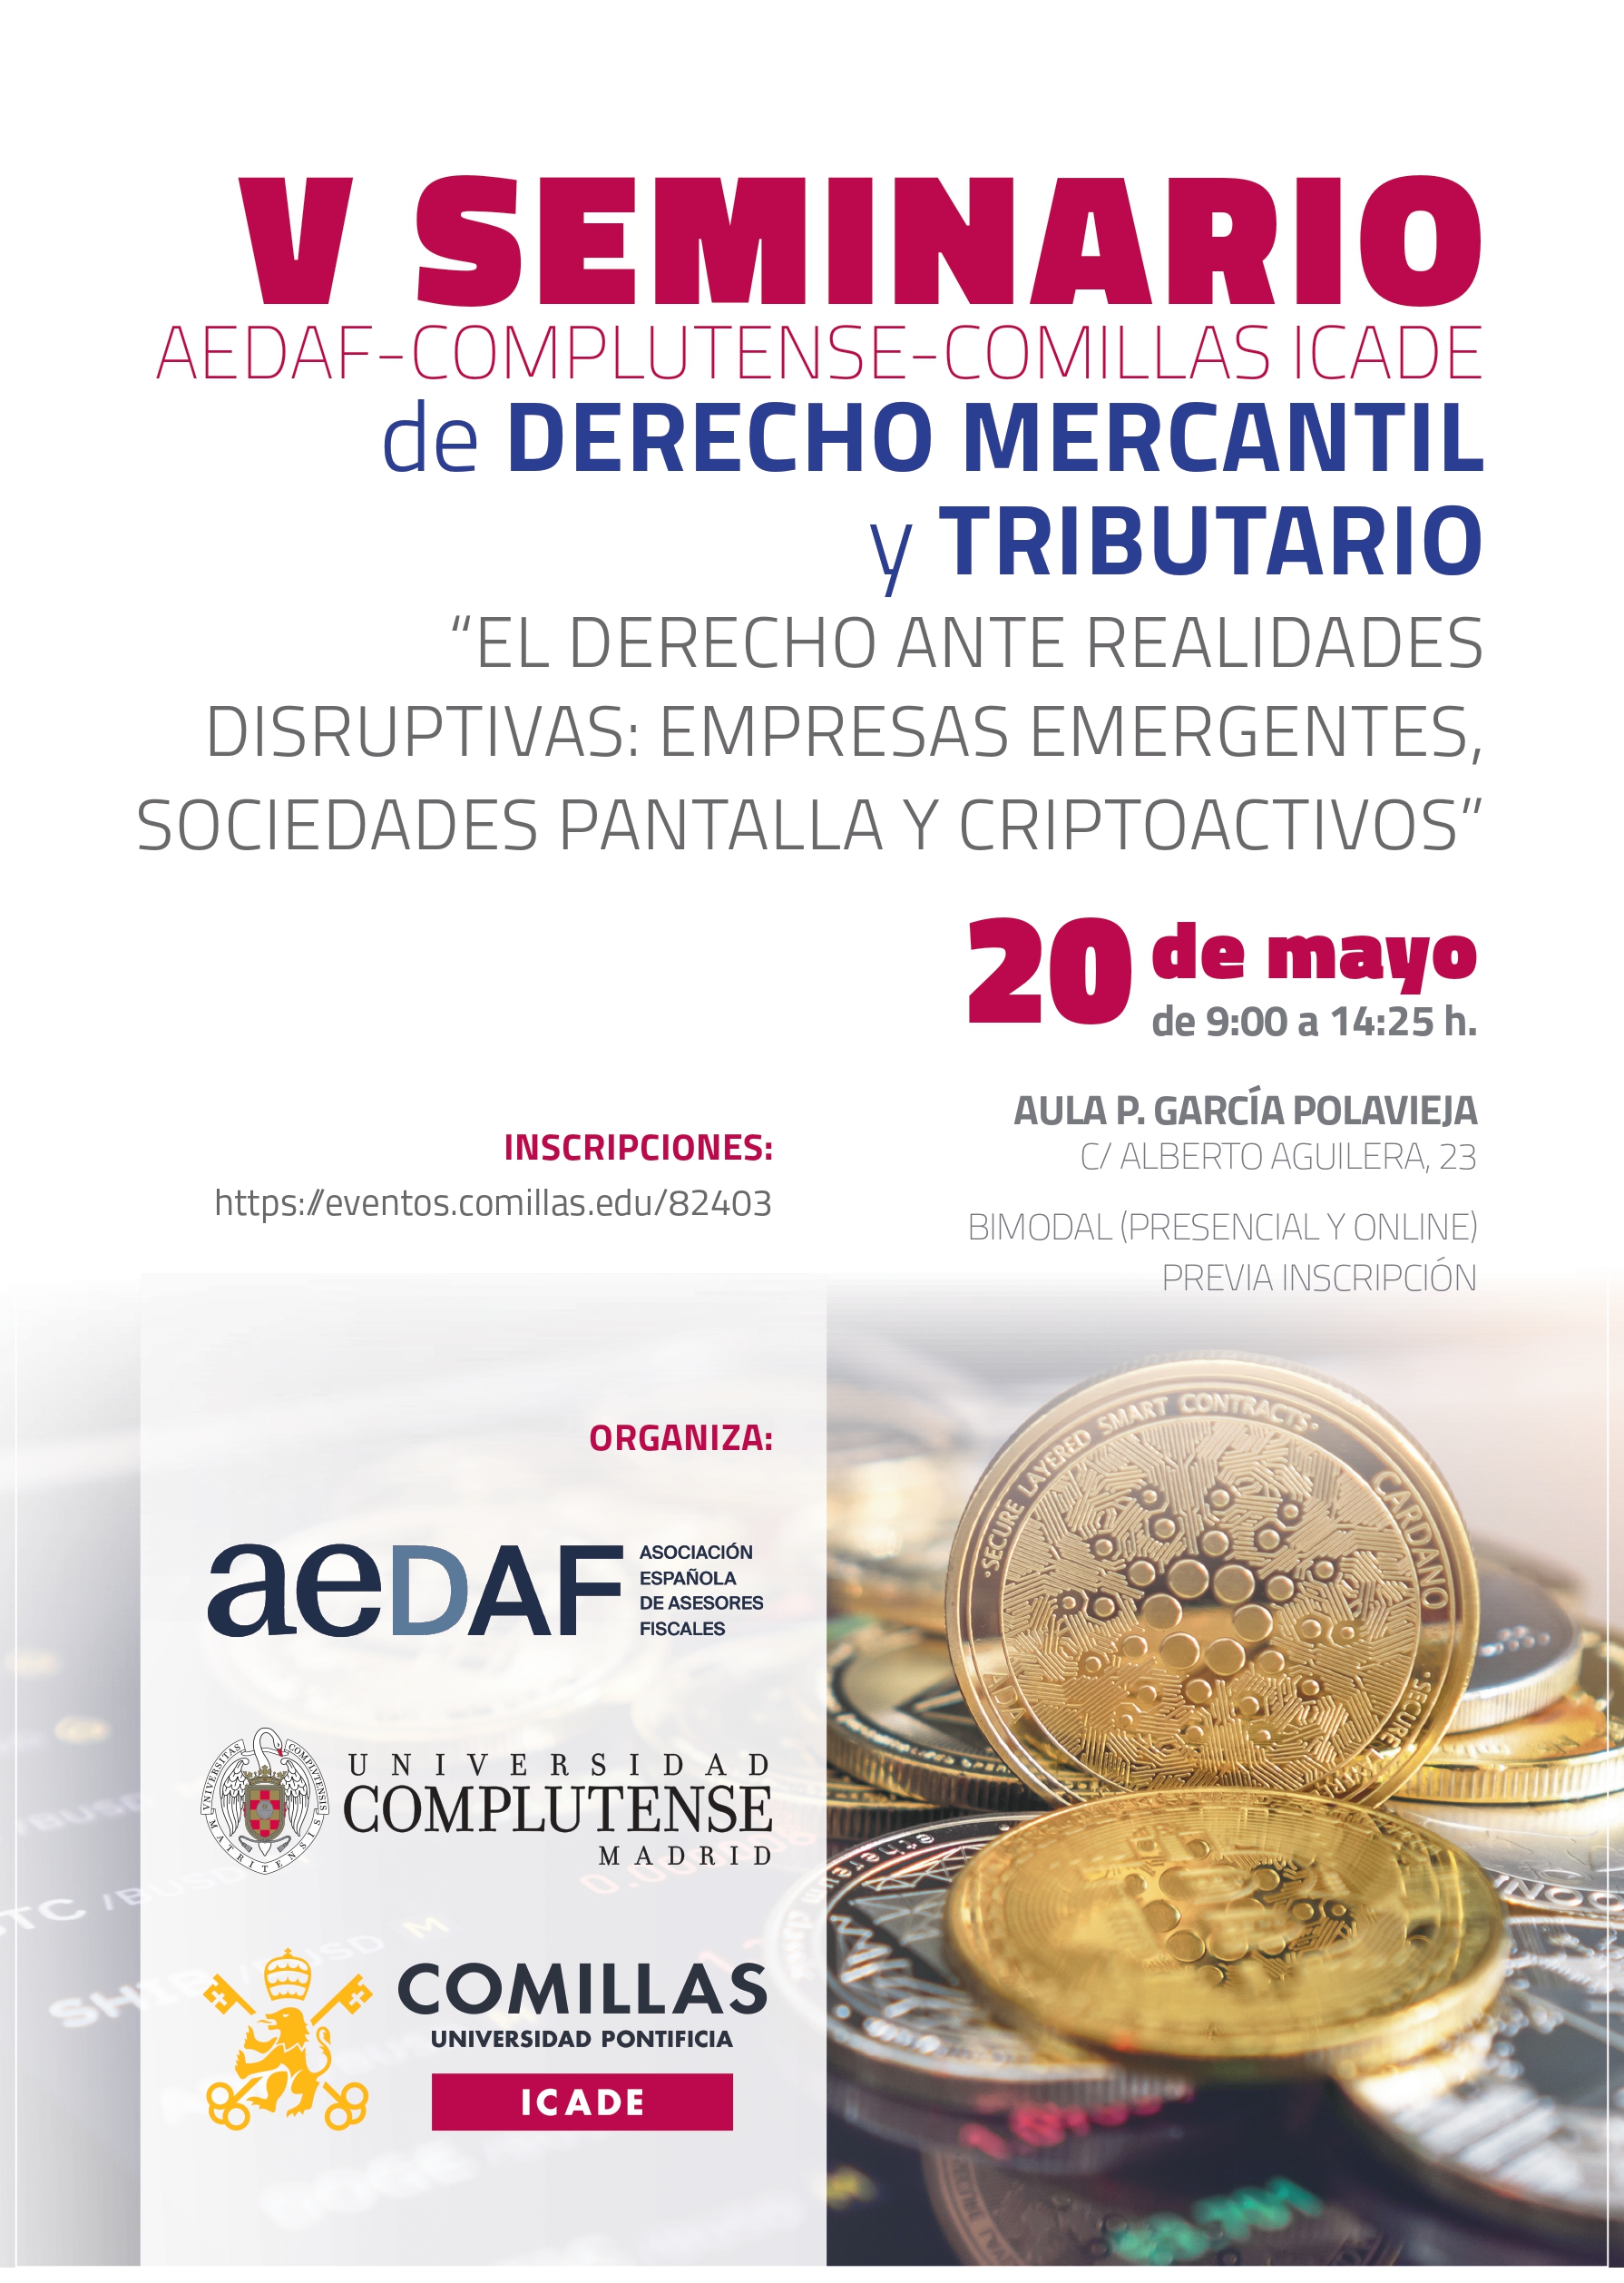 Seminario AEDAF-UCM-ICADE “El derecho ante realidades disruptivas: empresas emergentes, sociedades pantalla y criptoactivos” (20 mayo 2022) 